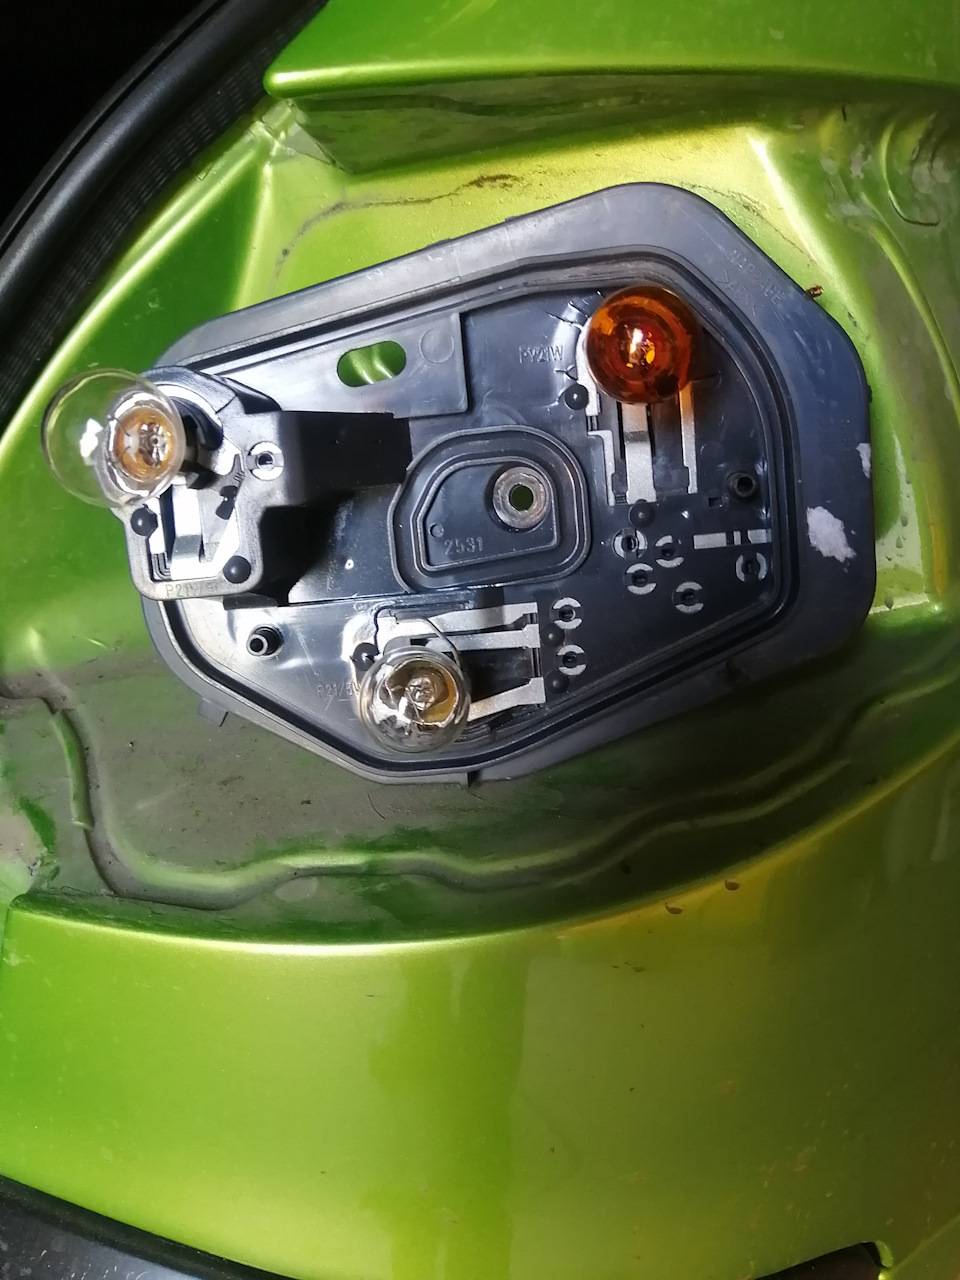 Как заменить лампочку переднего поворотника на пежо 206?